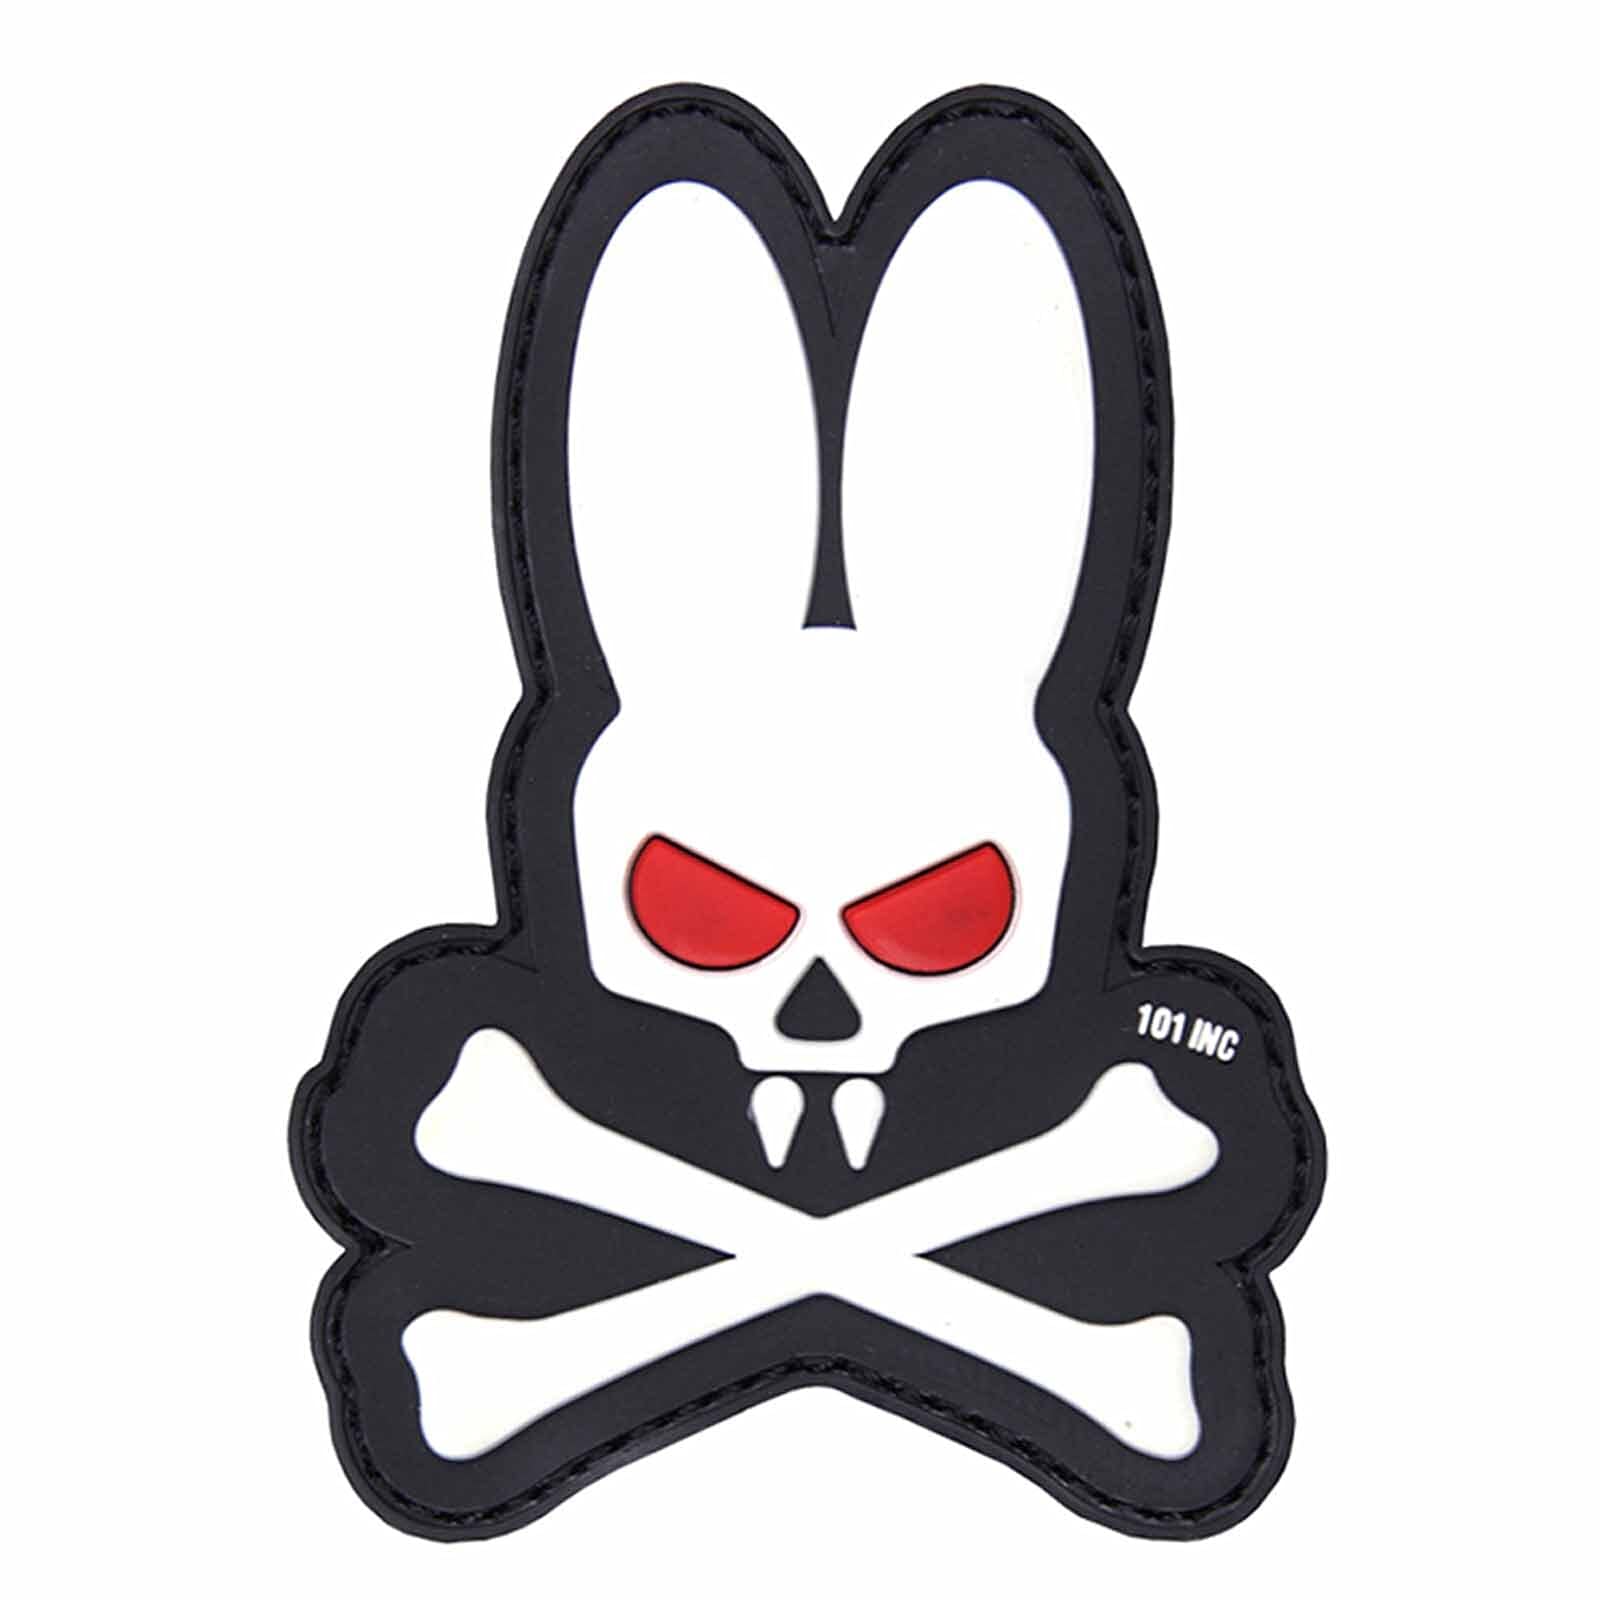 Emblem 3D PVC Skull Bunny with Bones Hase mit Knochen Klett Patch Abzeichen Aufnäher wahlweise in 2 Farben weiß von 101 Inc.